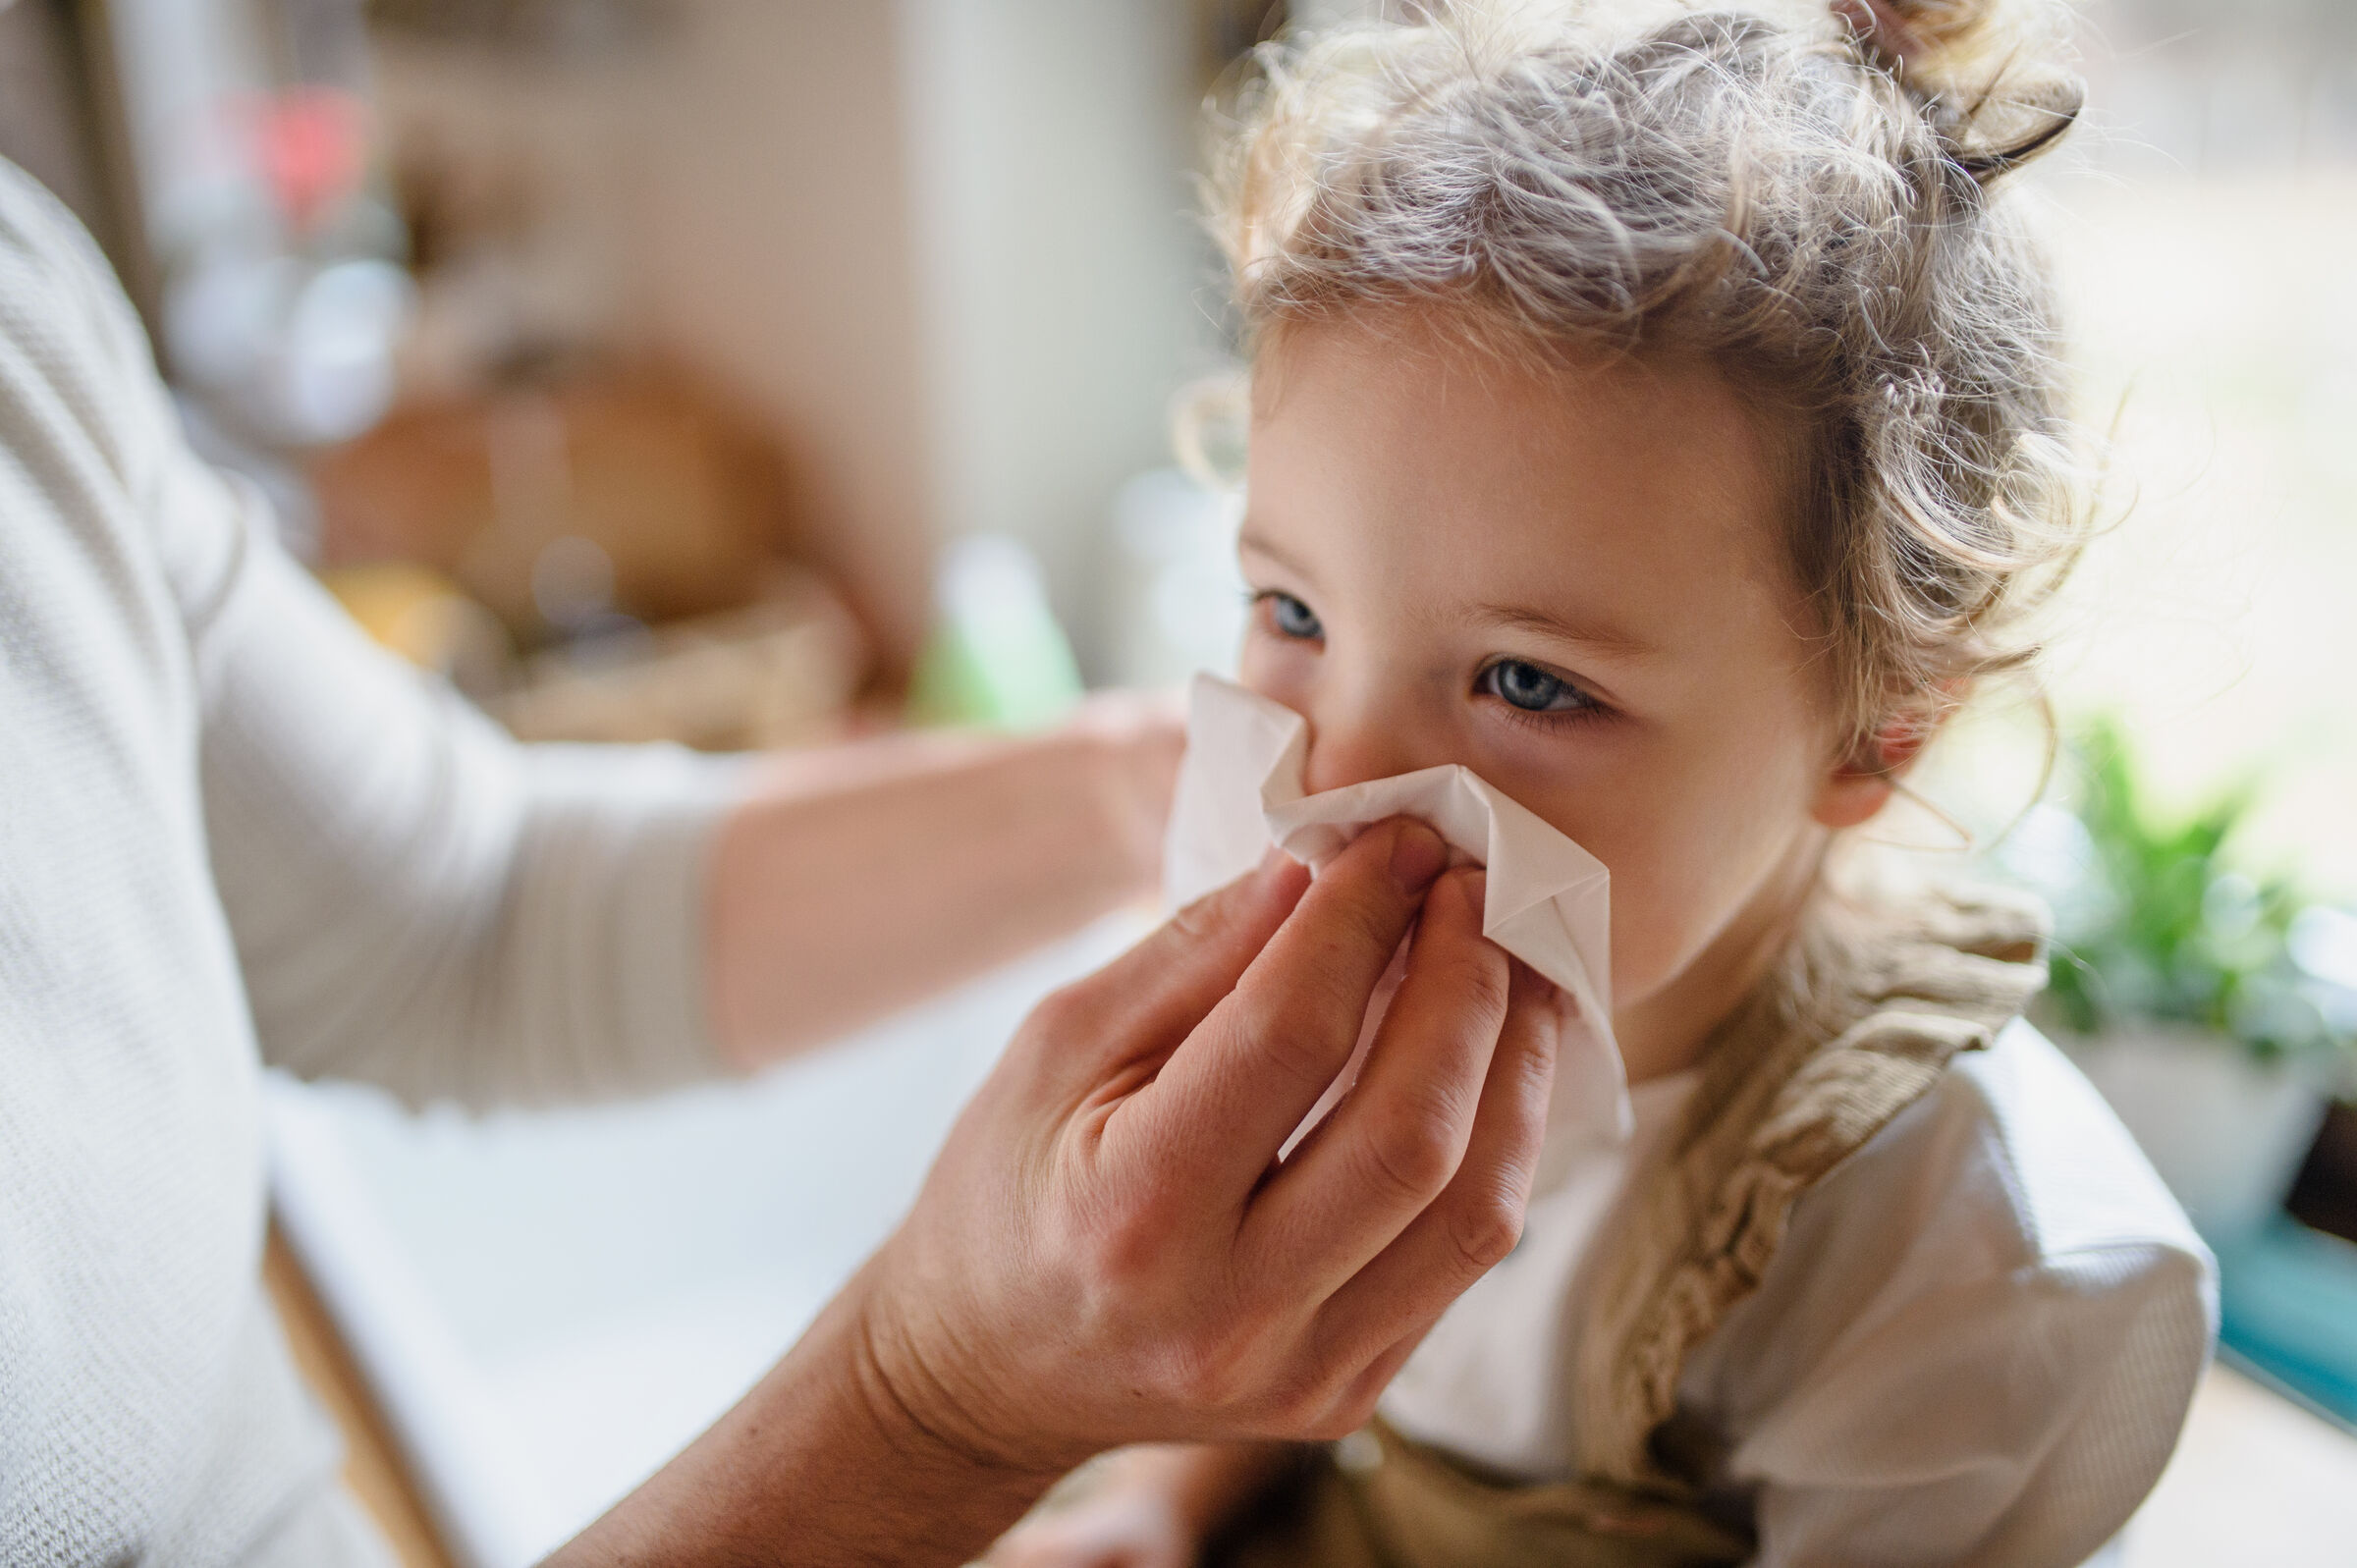 Pessoa limpando o nariz de uma criança usando um lenço branco